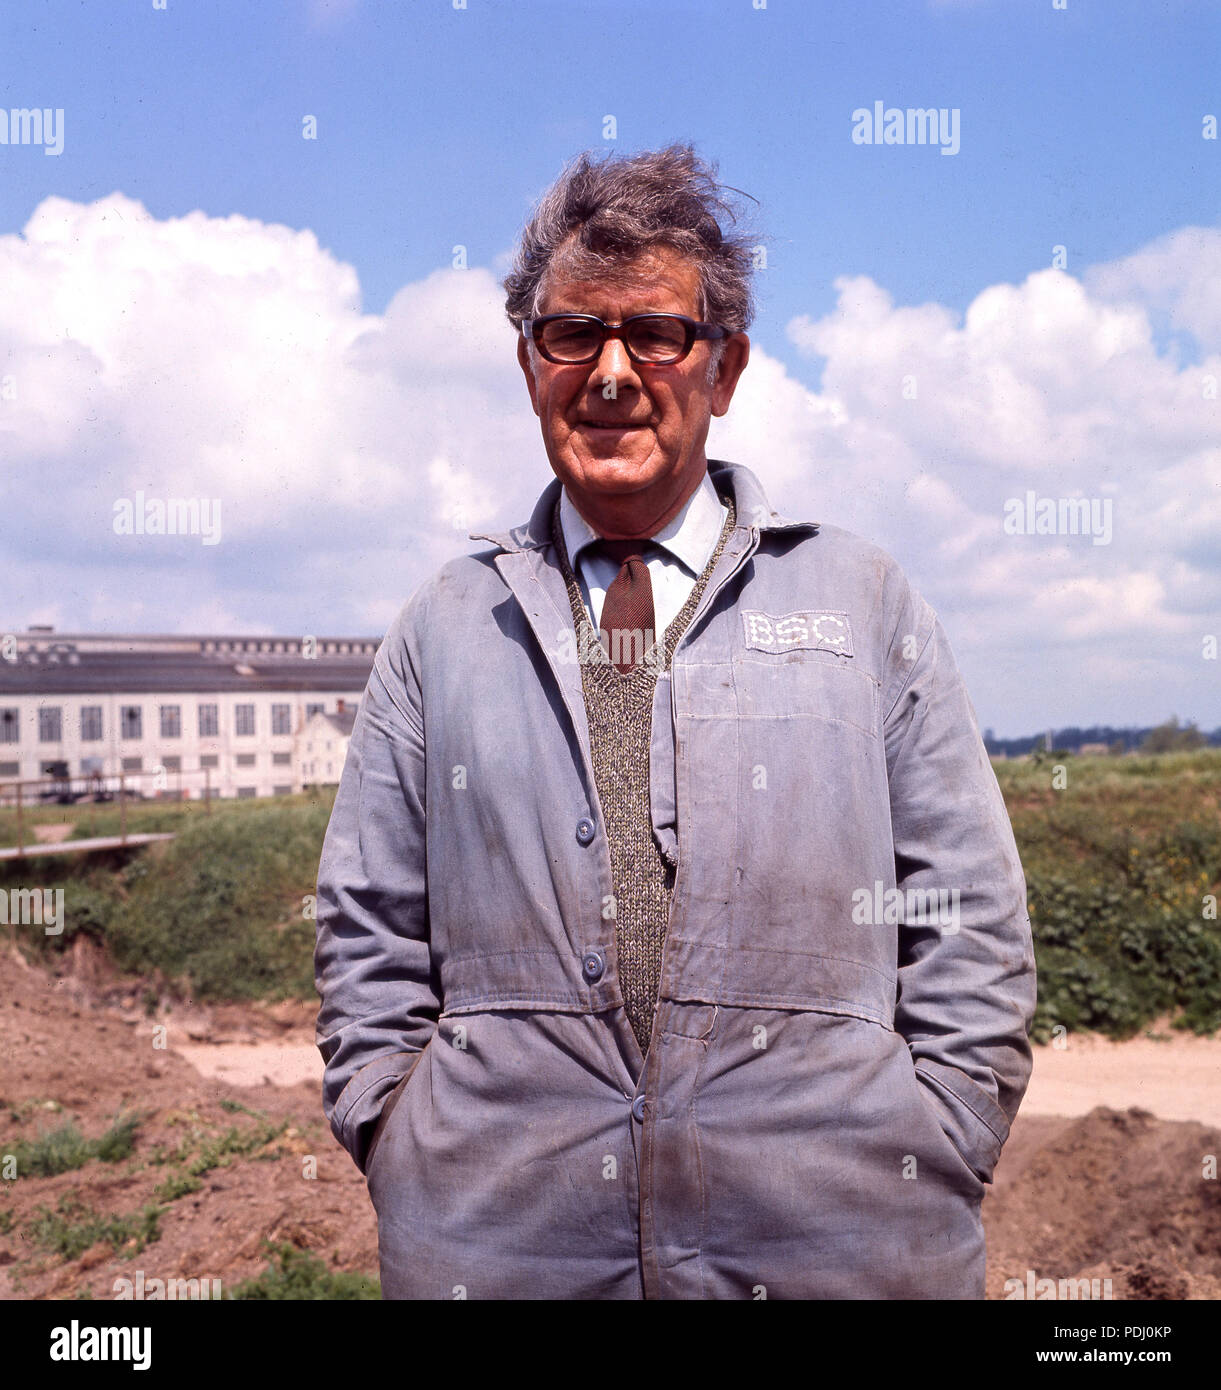 1960, l'homme debout à l'extérieur dans une chemise et une cravate et des vêtements de travail, le bleu/gris bleu de travail de la British Steel Corporation (BSC), Angleterre, Royaume-Uni. Banque D'Images